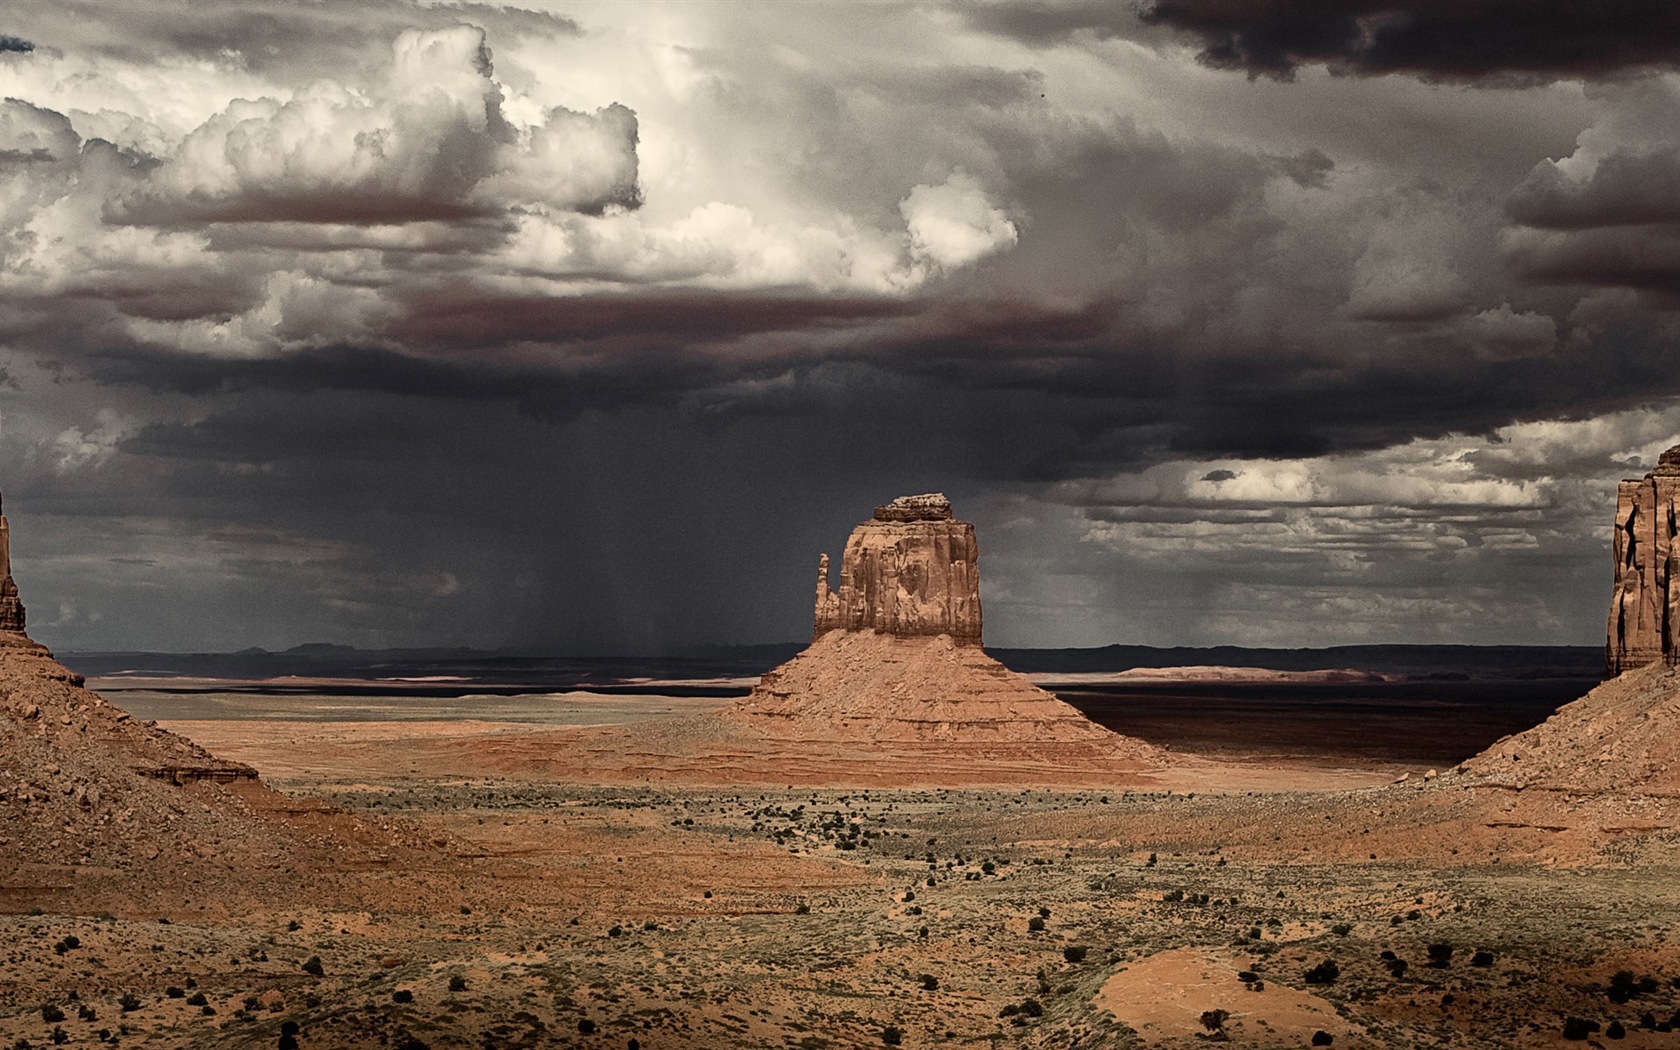 Les déserts chauds et arides, de Windows 8 fonds d'écran widescreen panoramique #7 - 1680x1050